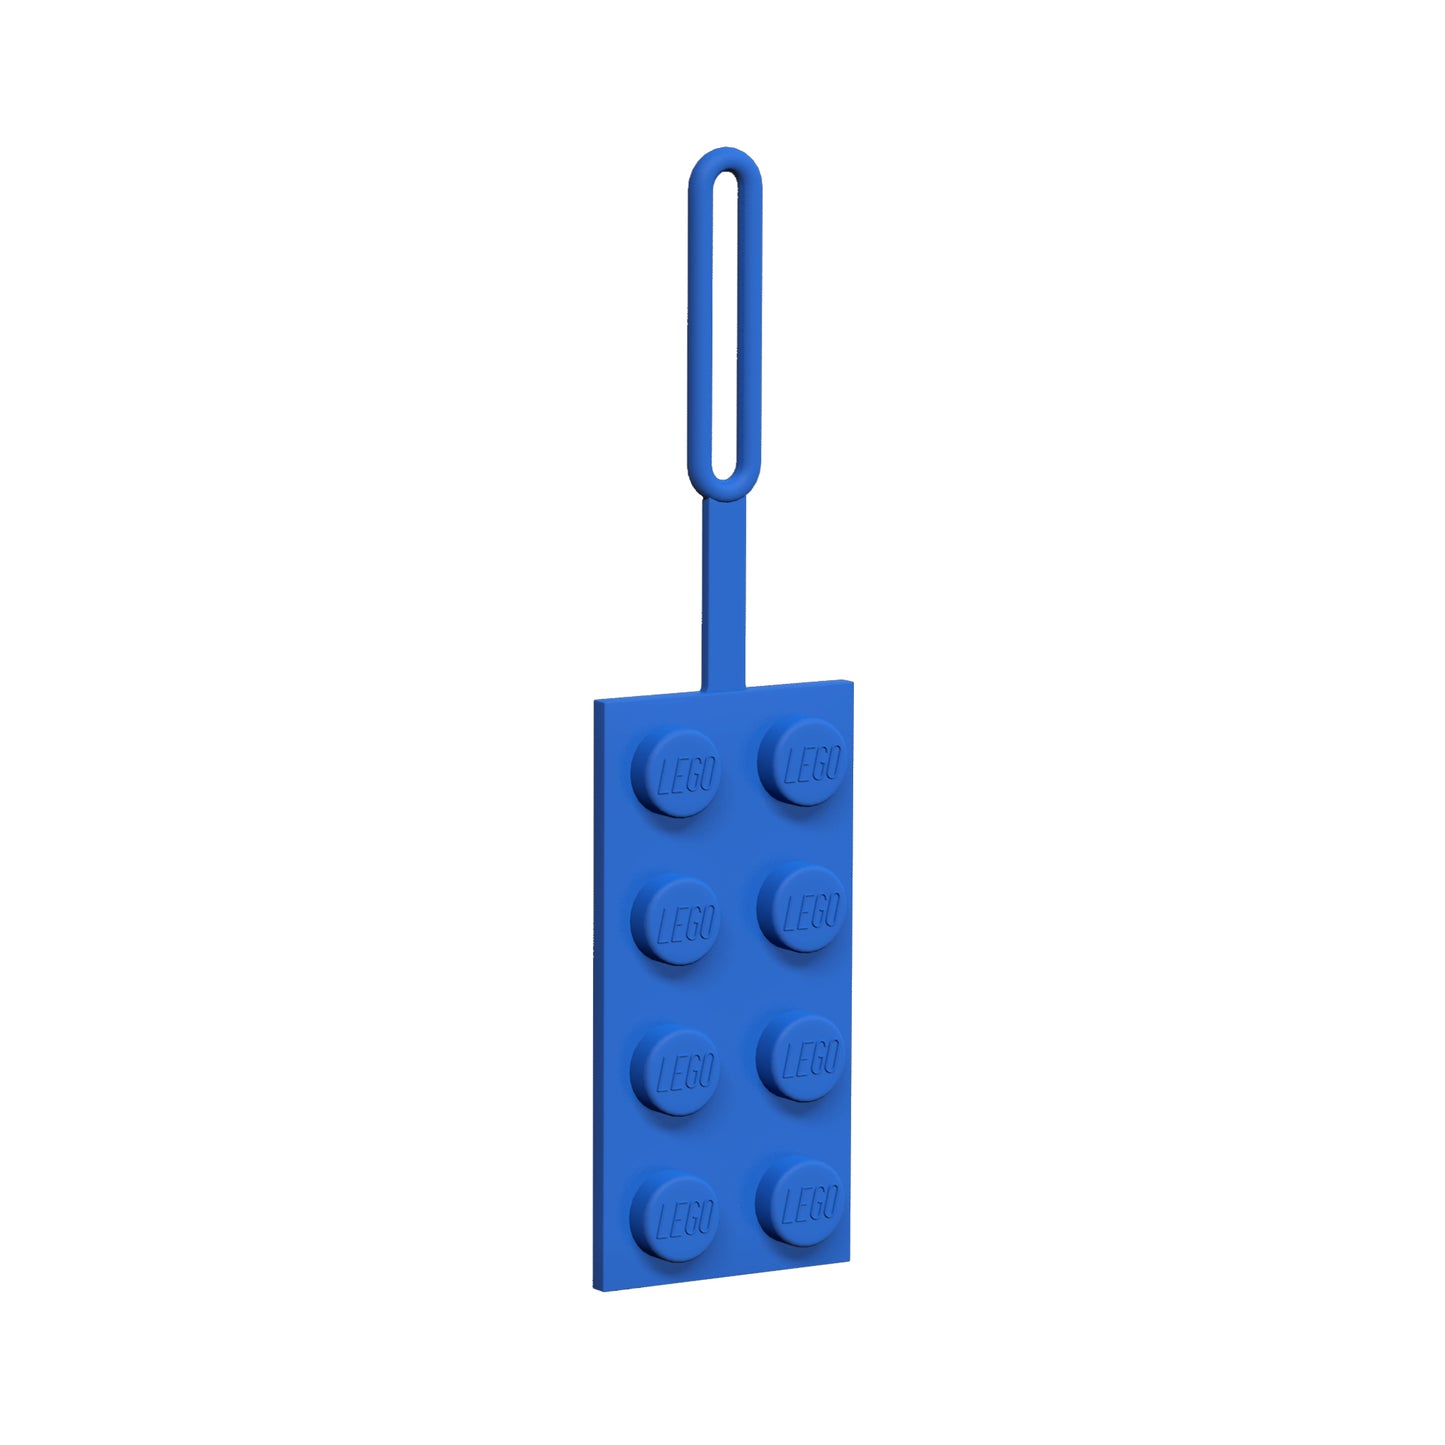 IQ 樂高 經典系列 藍色2x4樂高顆粒 造型吊牌 (52001)